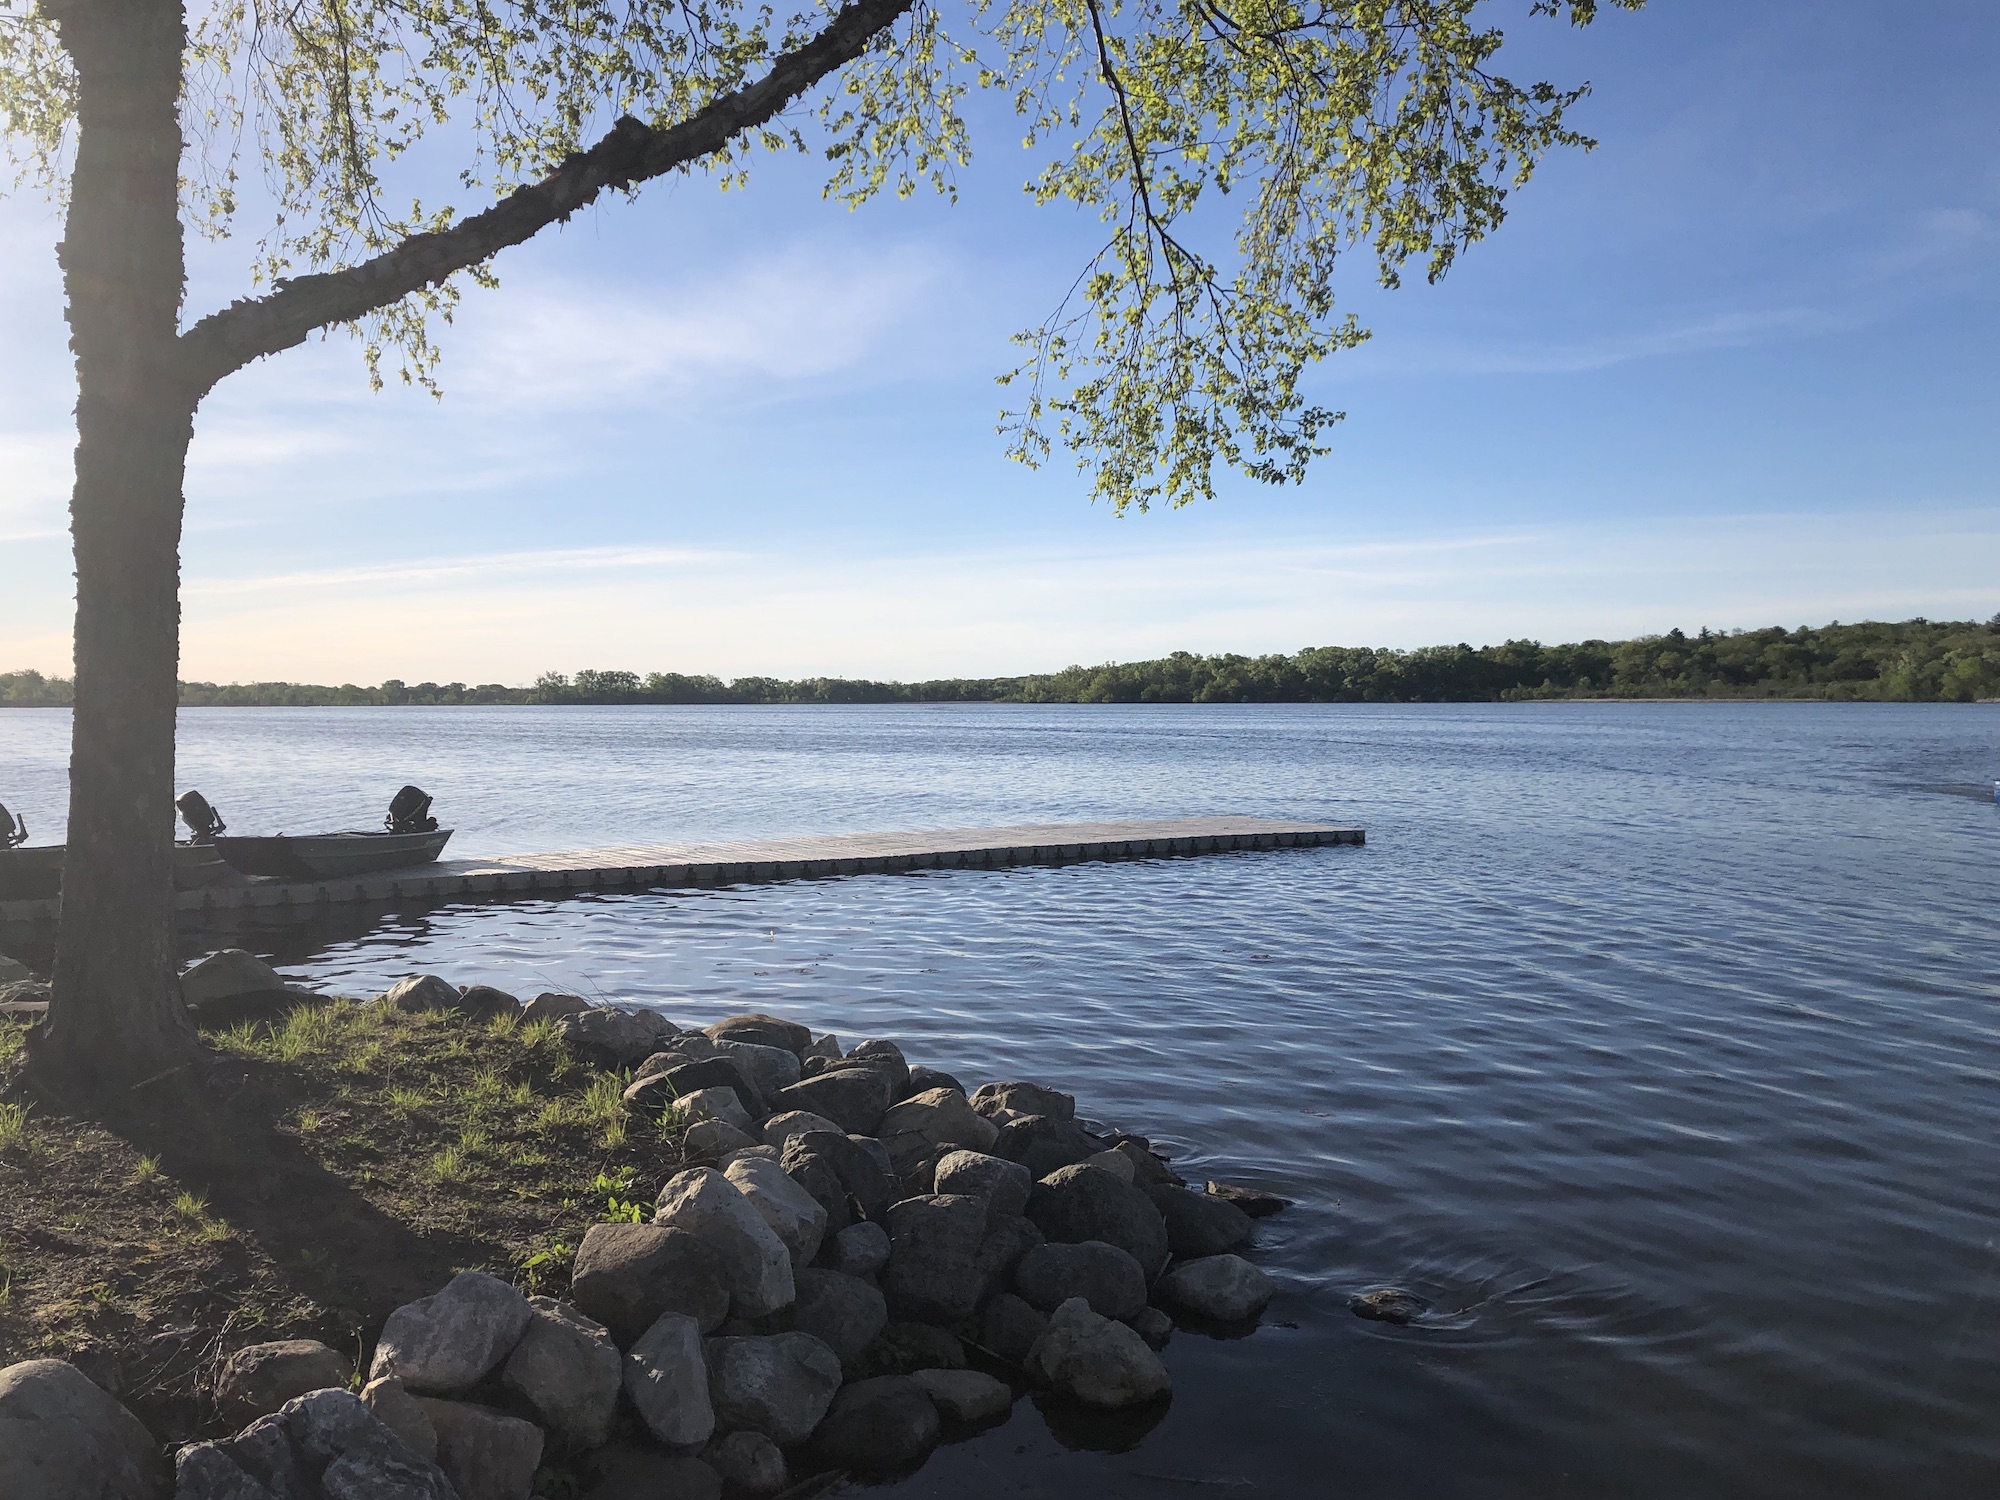 Lake Wingra on May 23, 2019.